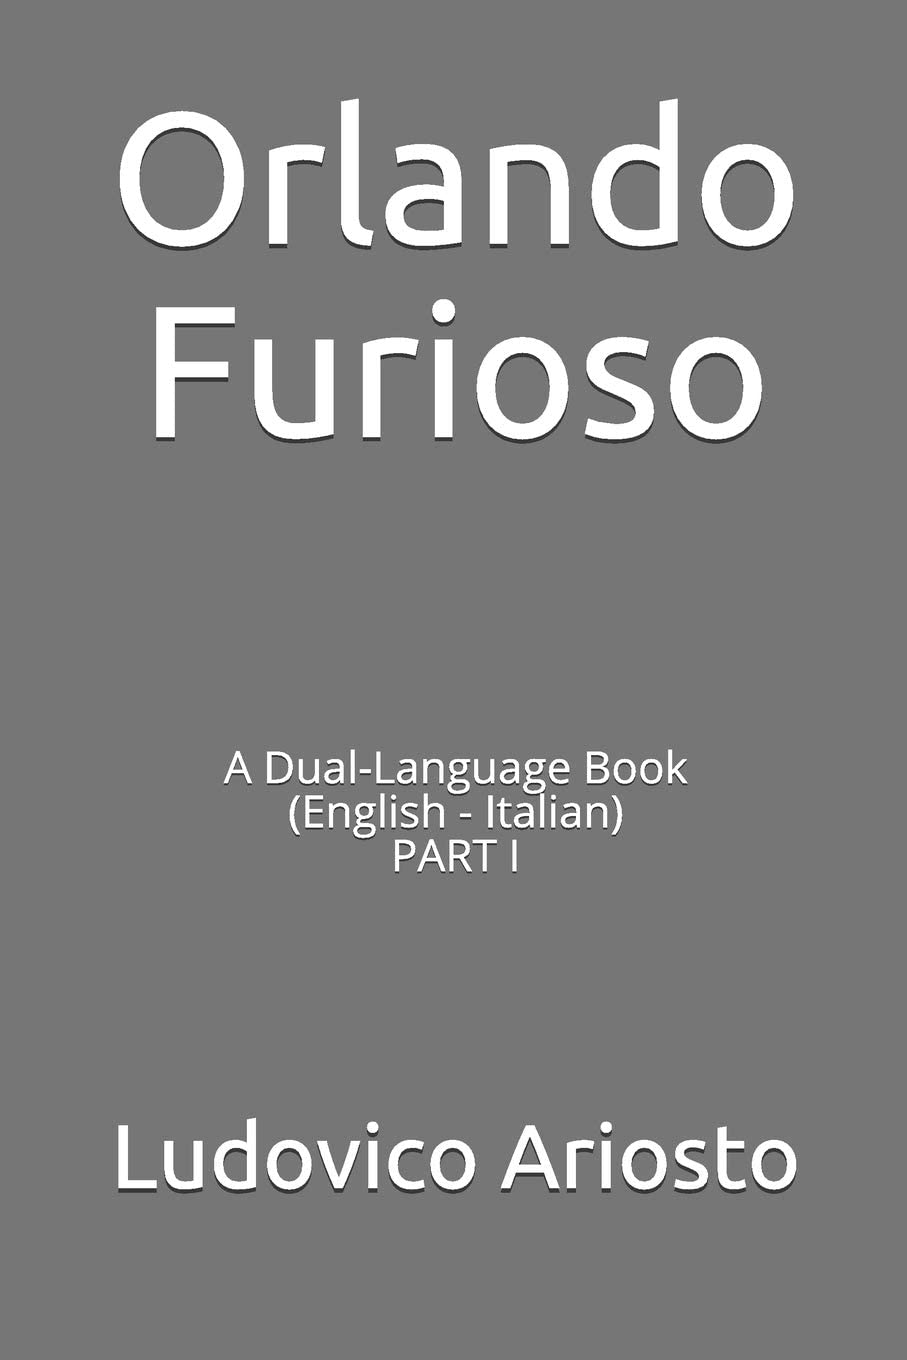 Orlando Furioso: A Dual-Language Book (English - Italian) PART I